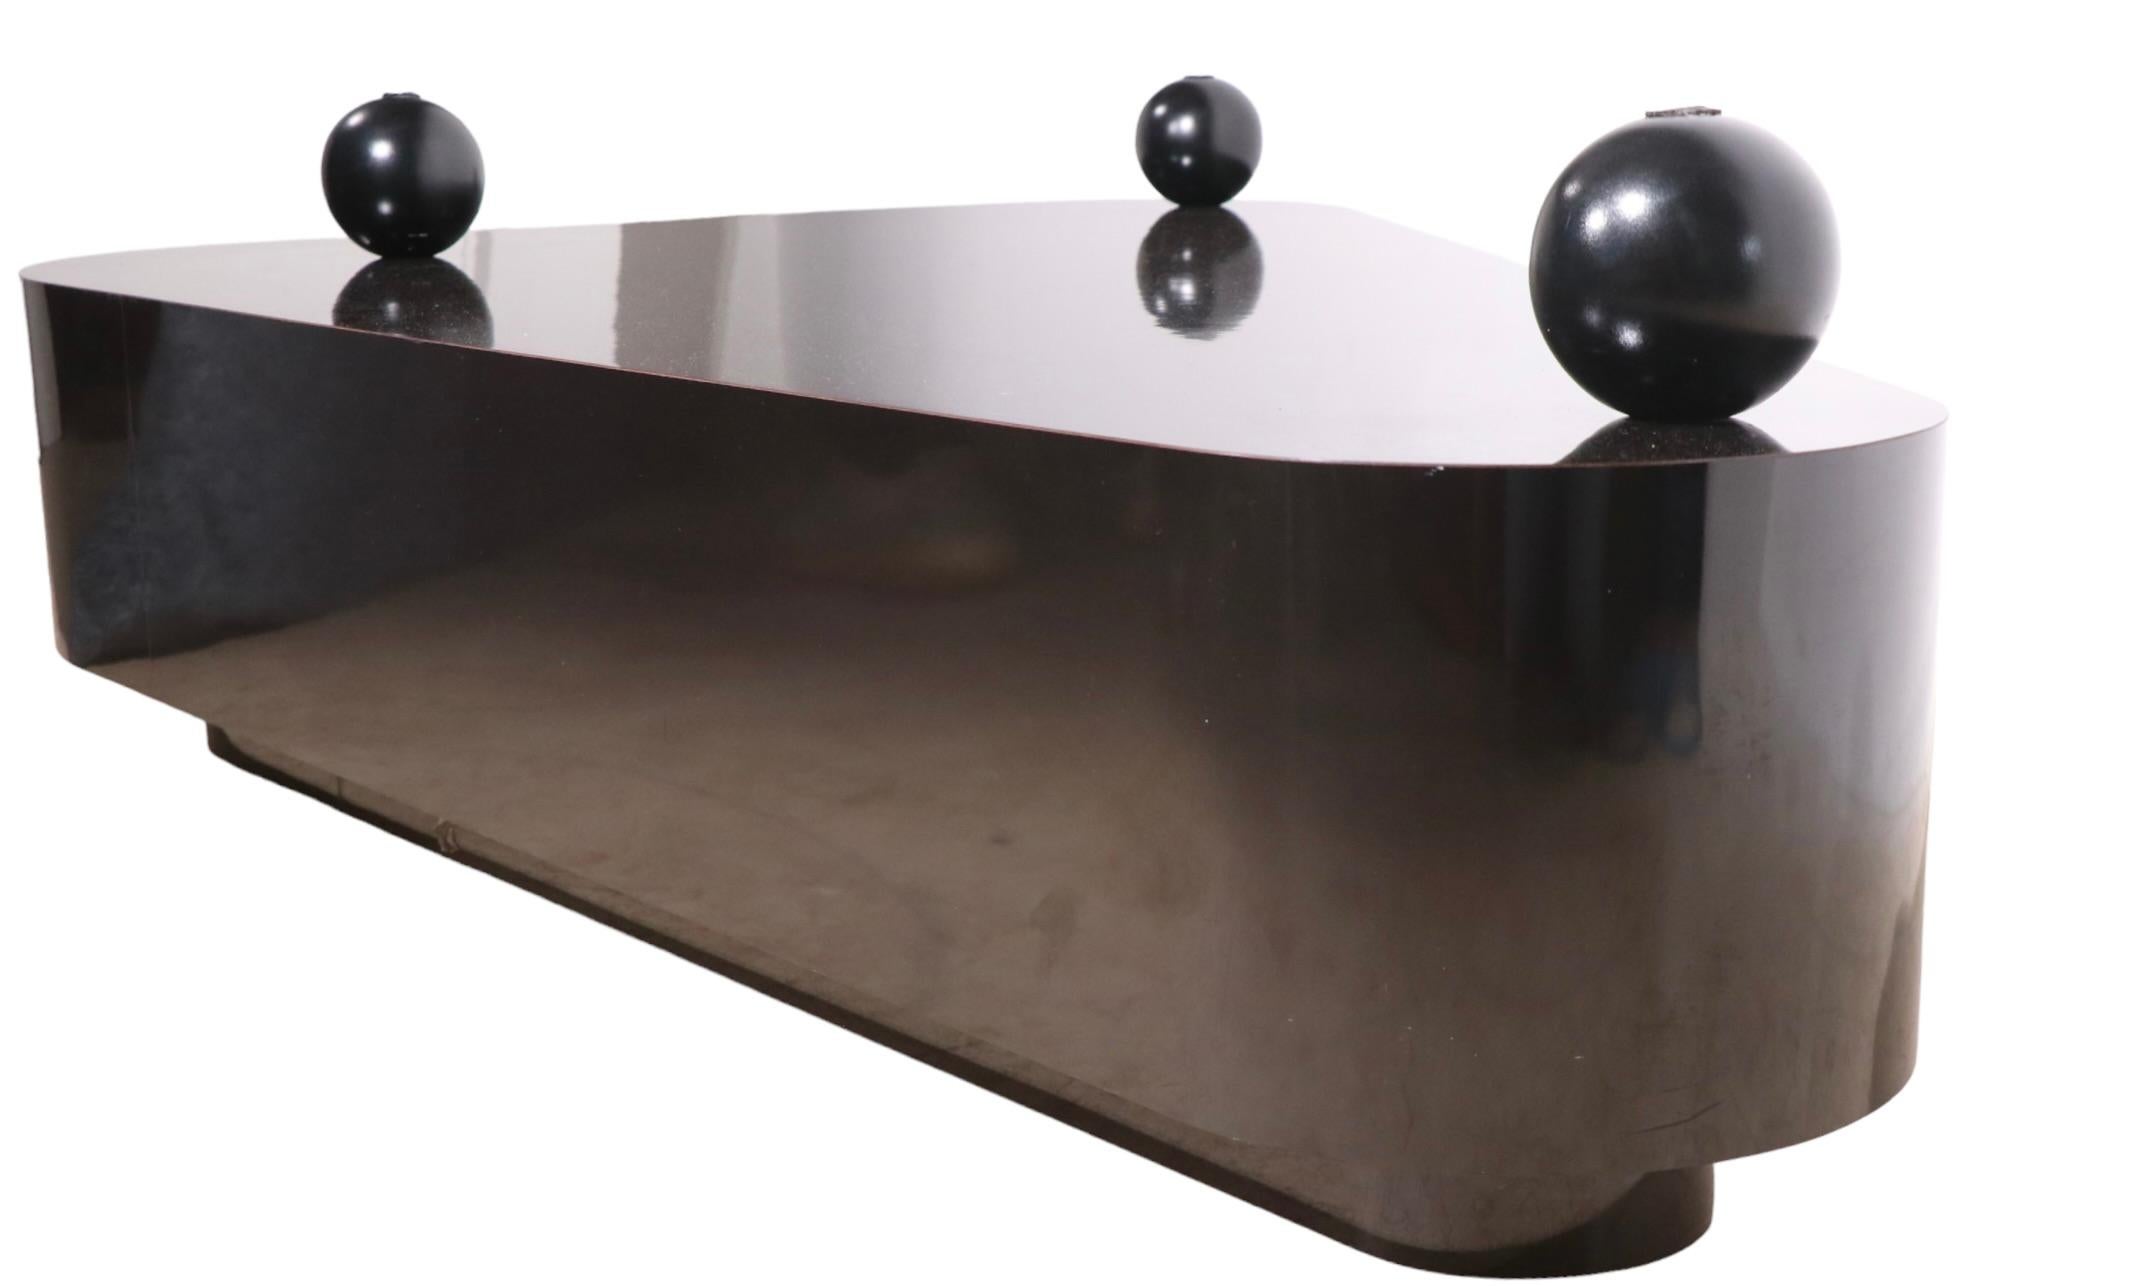 Spectaculaire table basse triangulaire à deux niveaux, avec une base en Formica noir brillant, et un plateau en verre épais ( 1 in. ) profondément texturé. La base comporte trois boules, sur lesquelles repose le plateau en verre, et un tiroir caché.